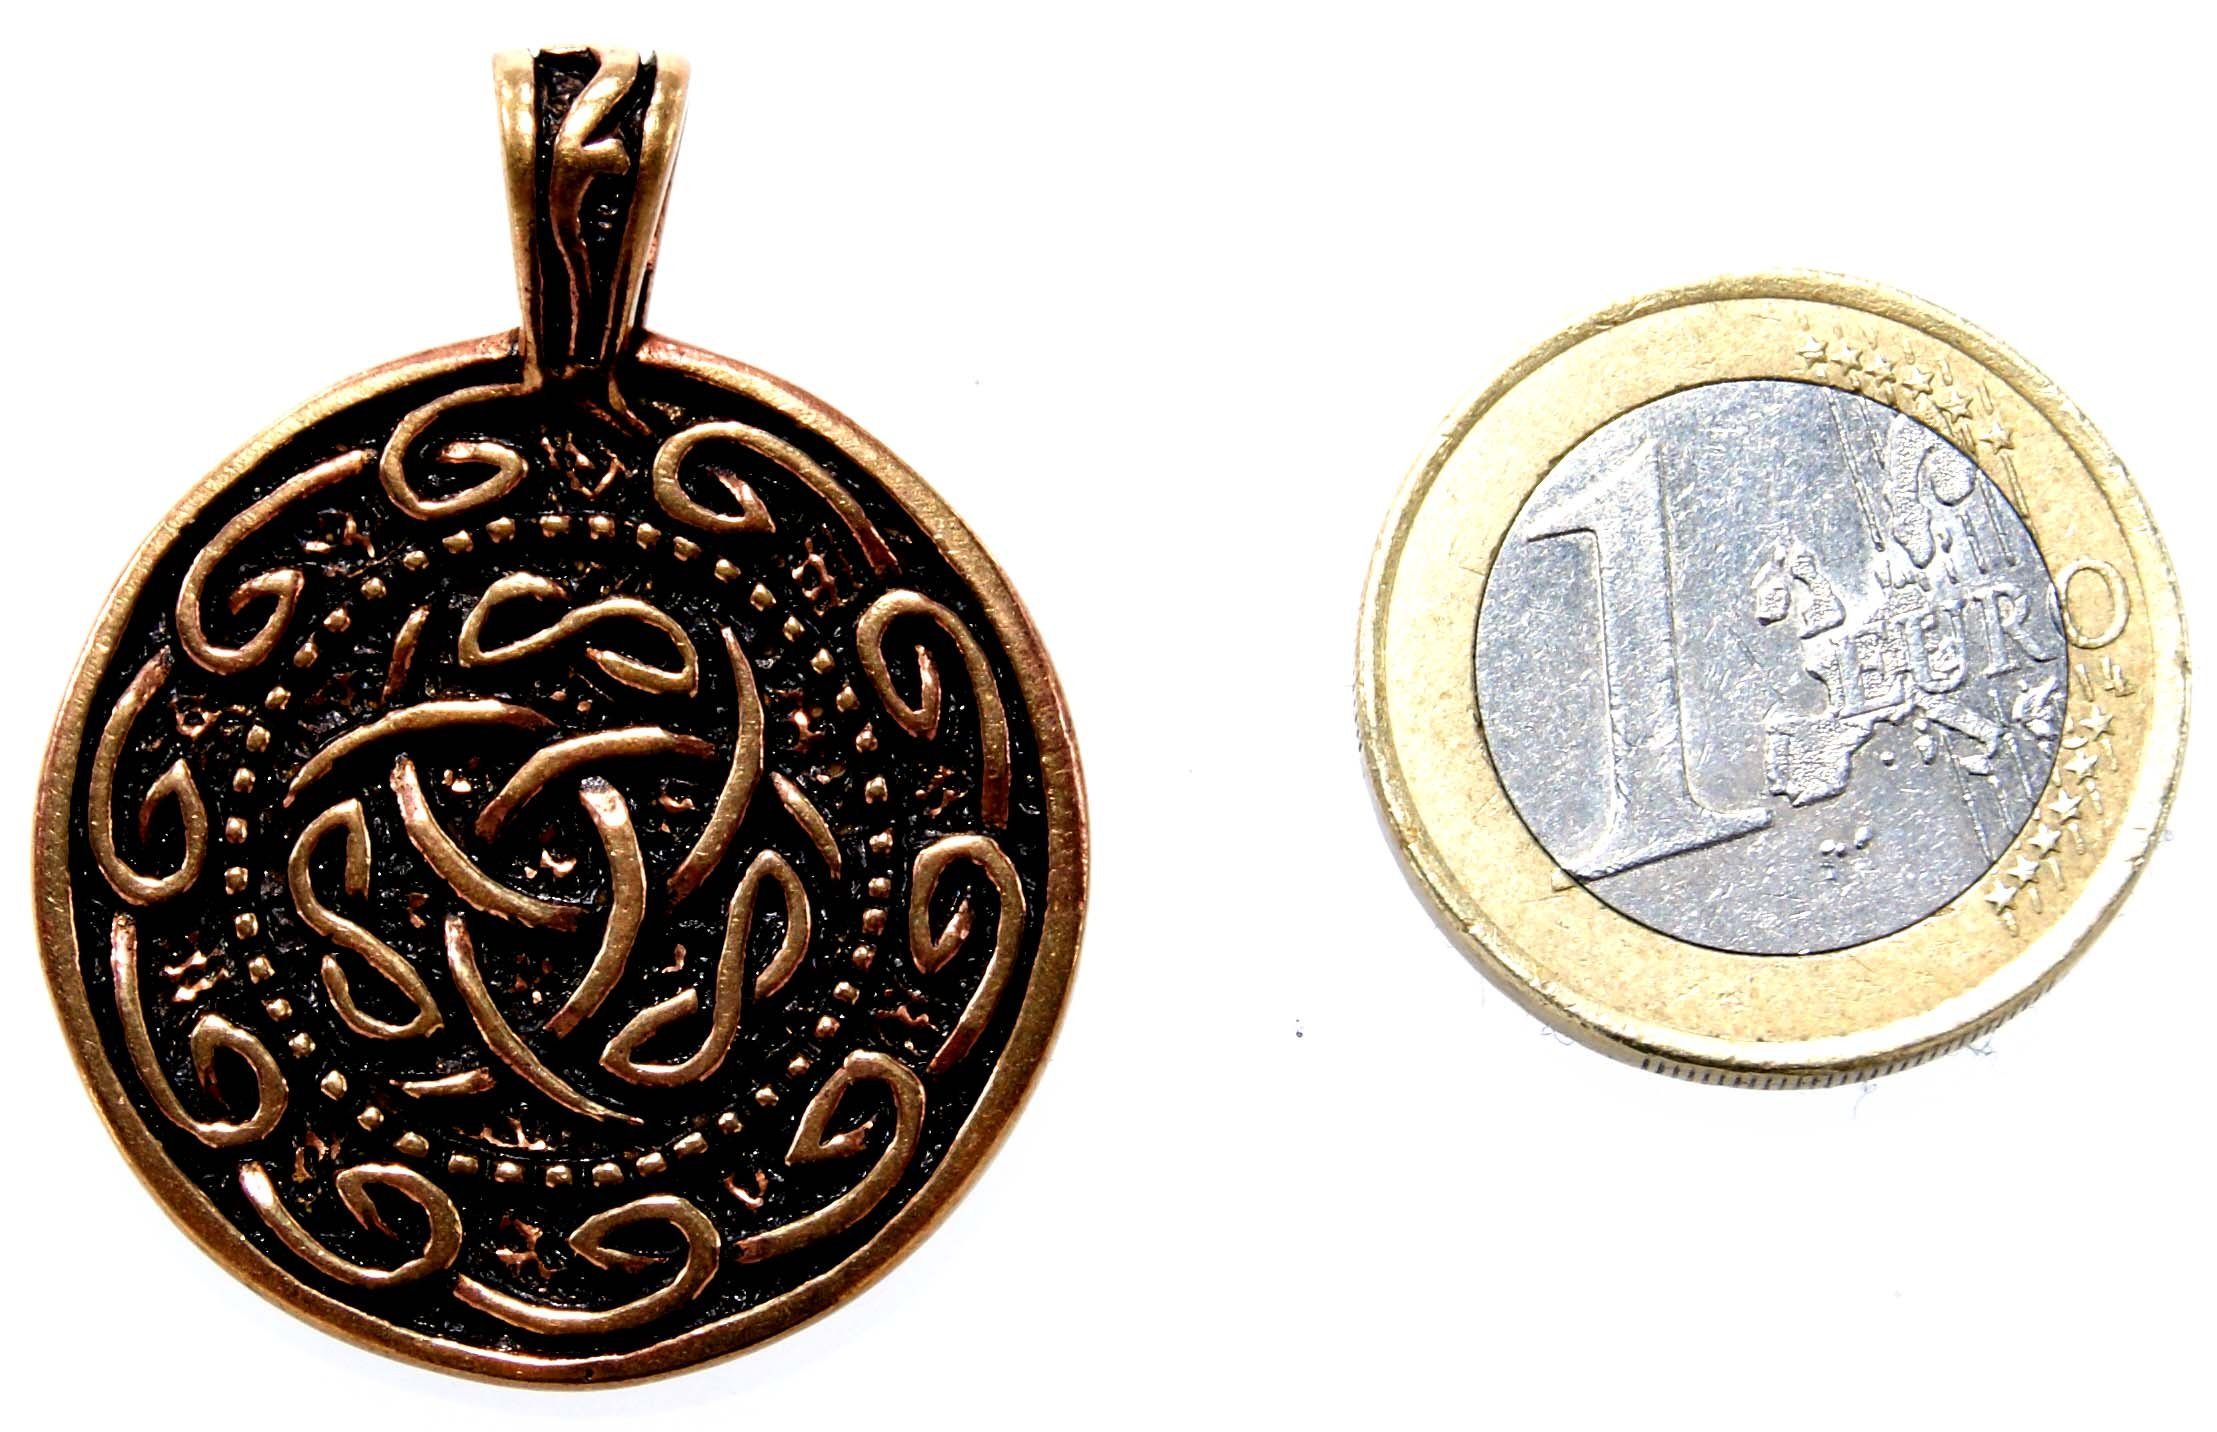 Keltenknoten Anhänger keltischer Knoten Kelten Kiss Kette Amulett Kettenanhänger Bronze Leather of